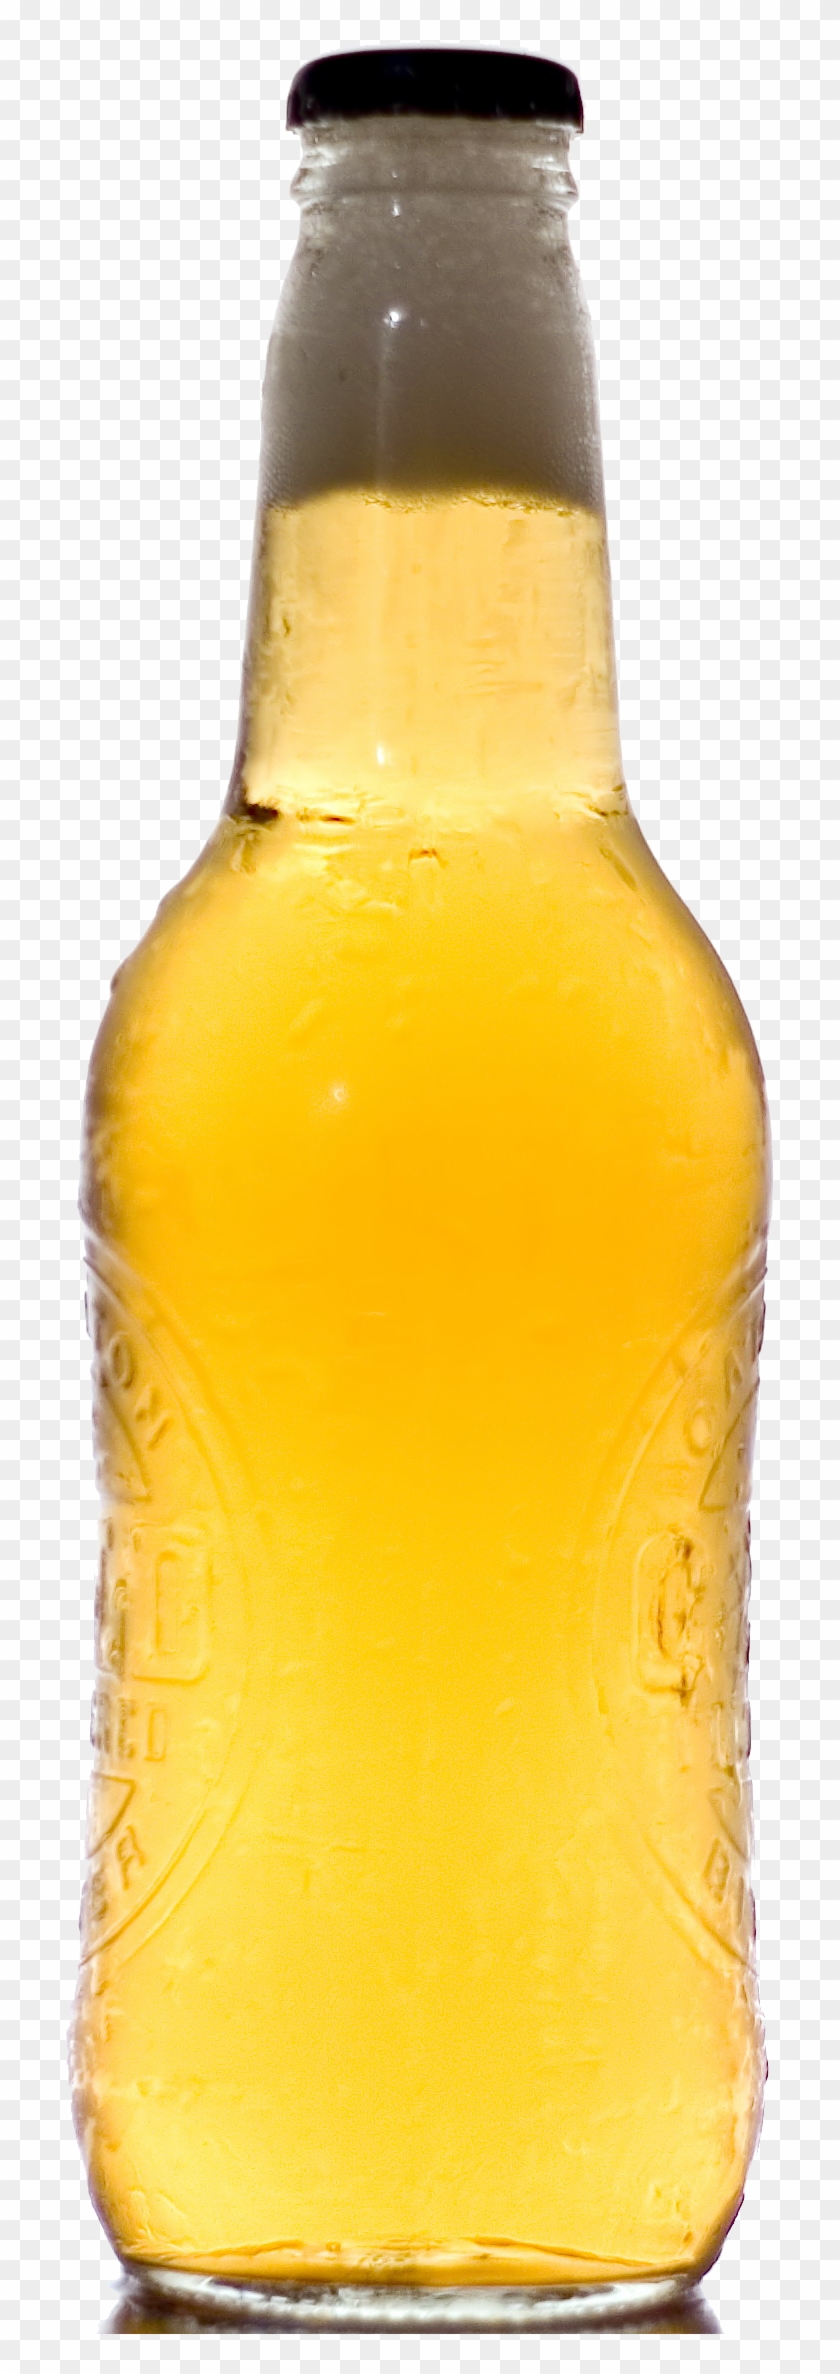 Beer Bottle Png Image - Beer Bottle Transparent Background Clipart #52207